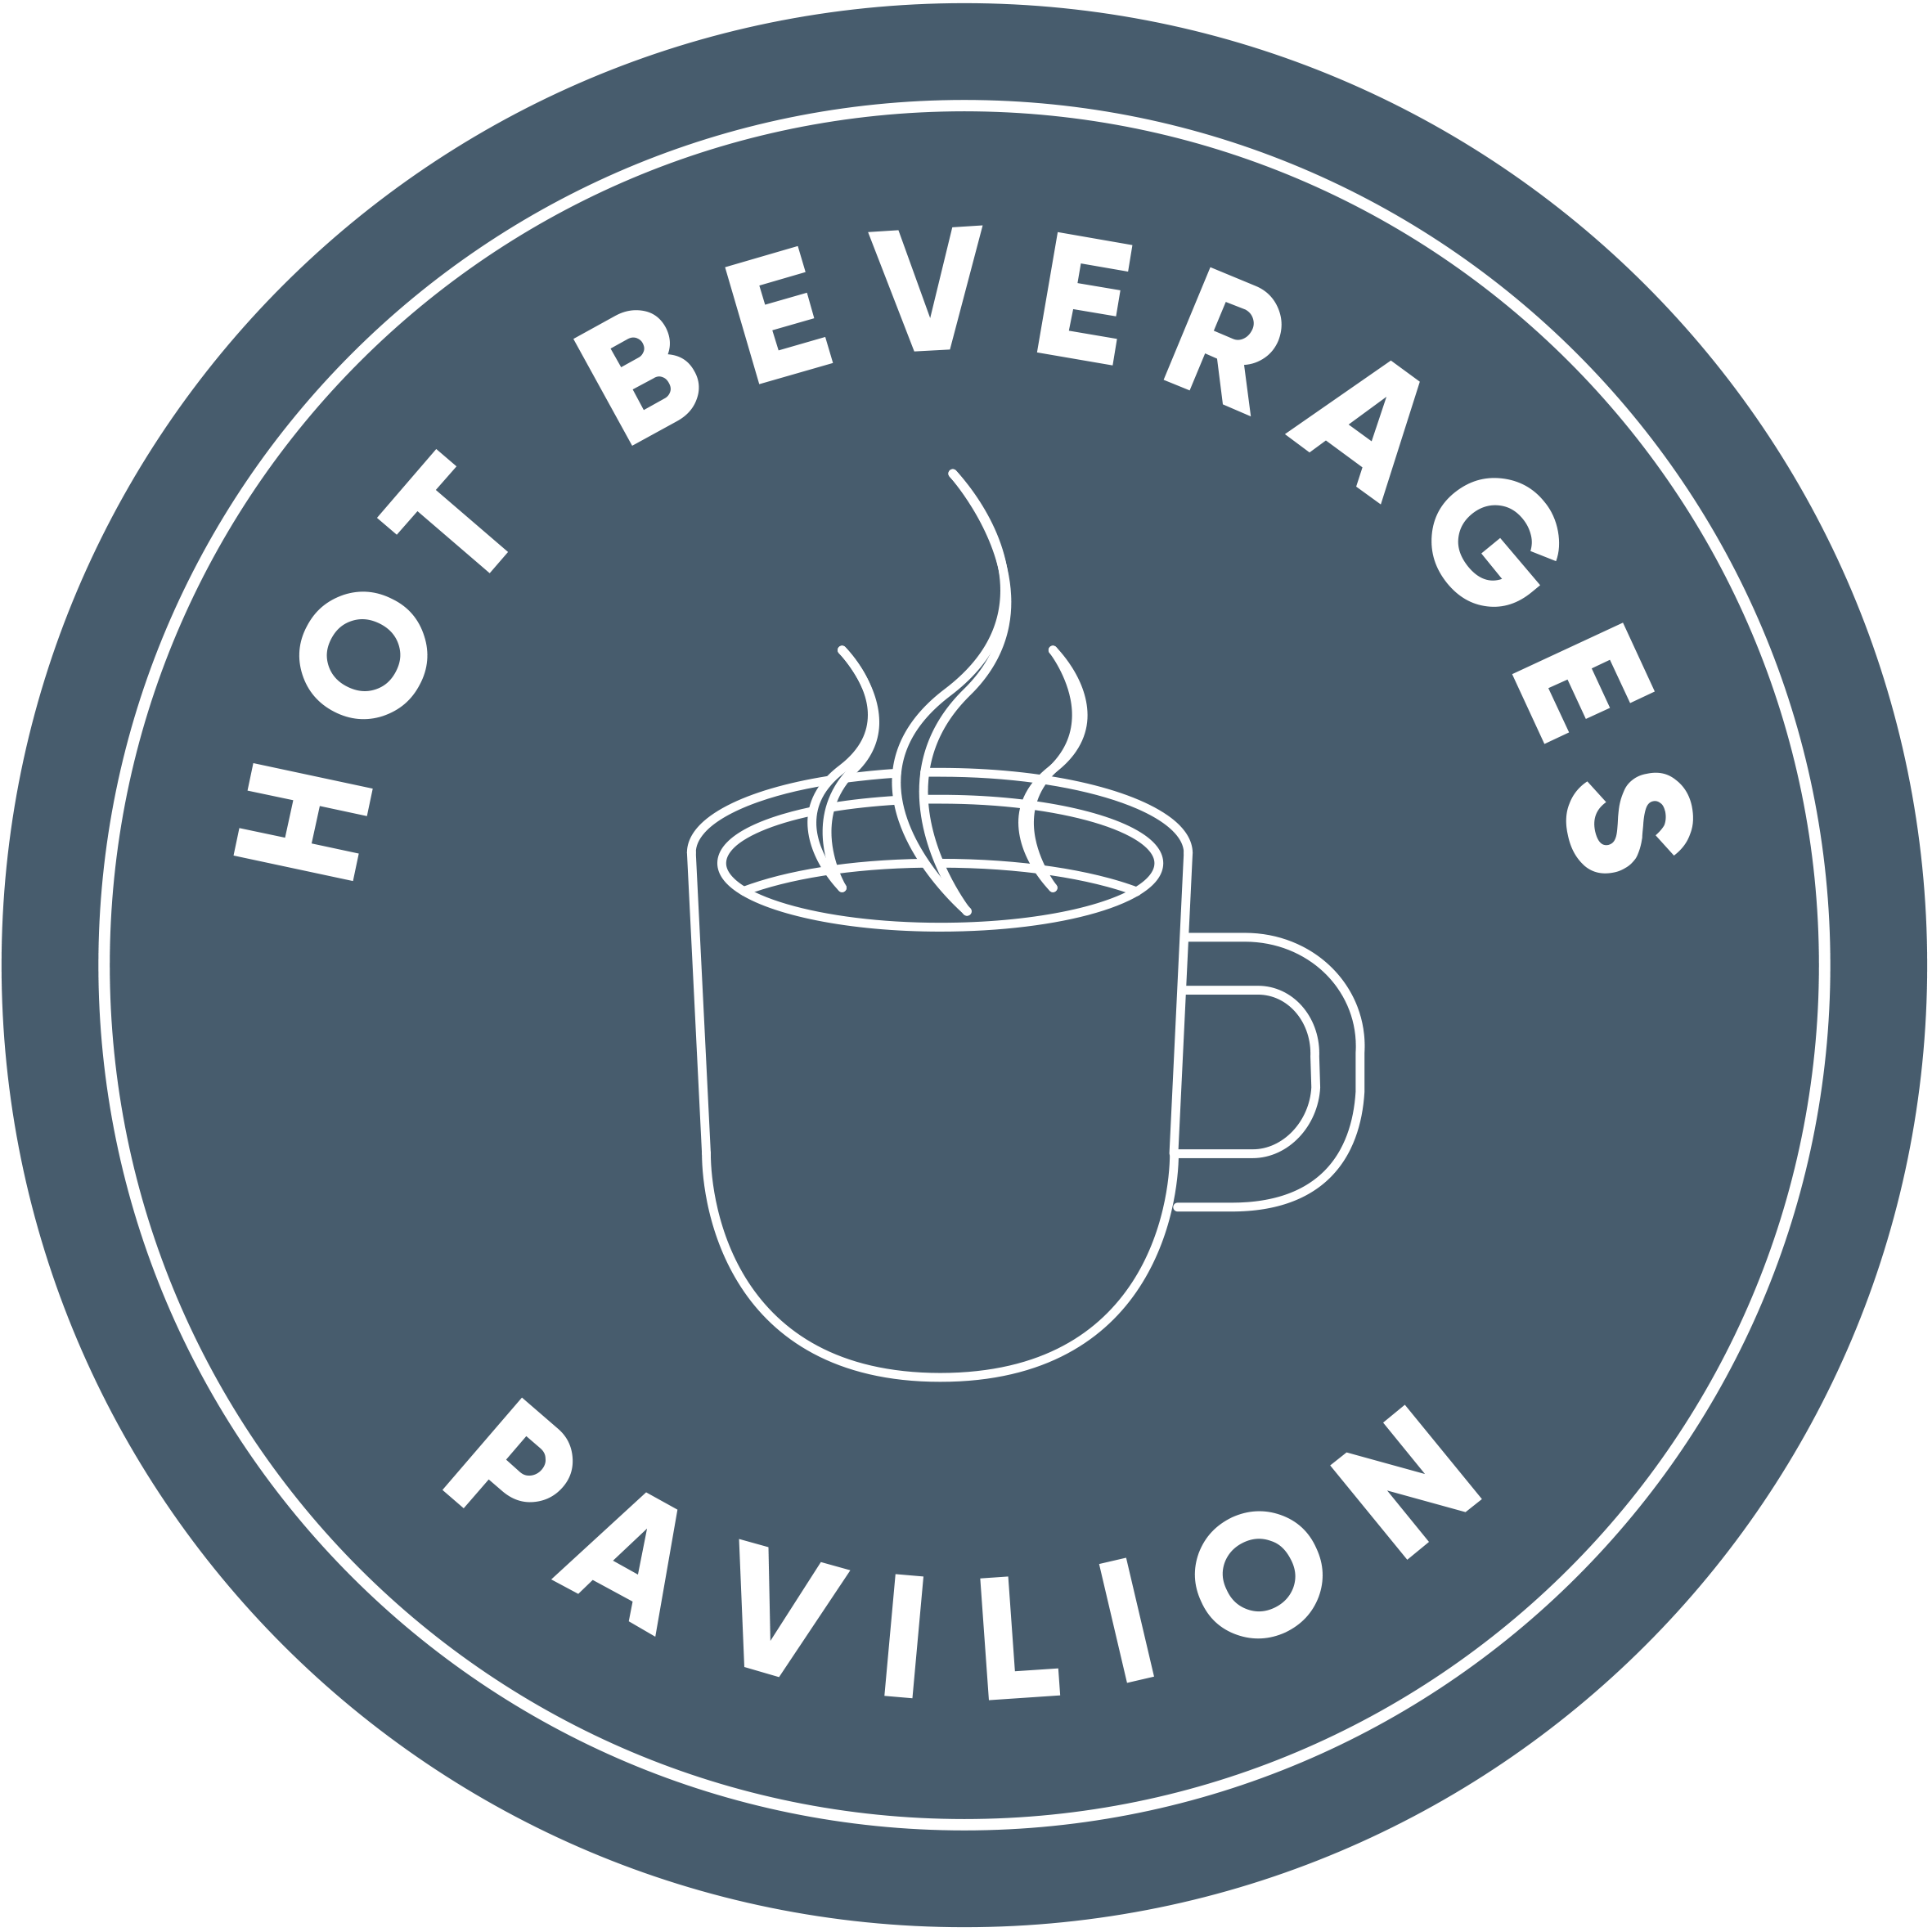 Hot Beverage Pavilion